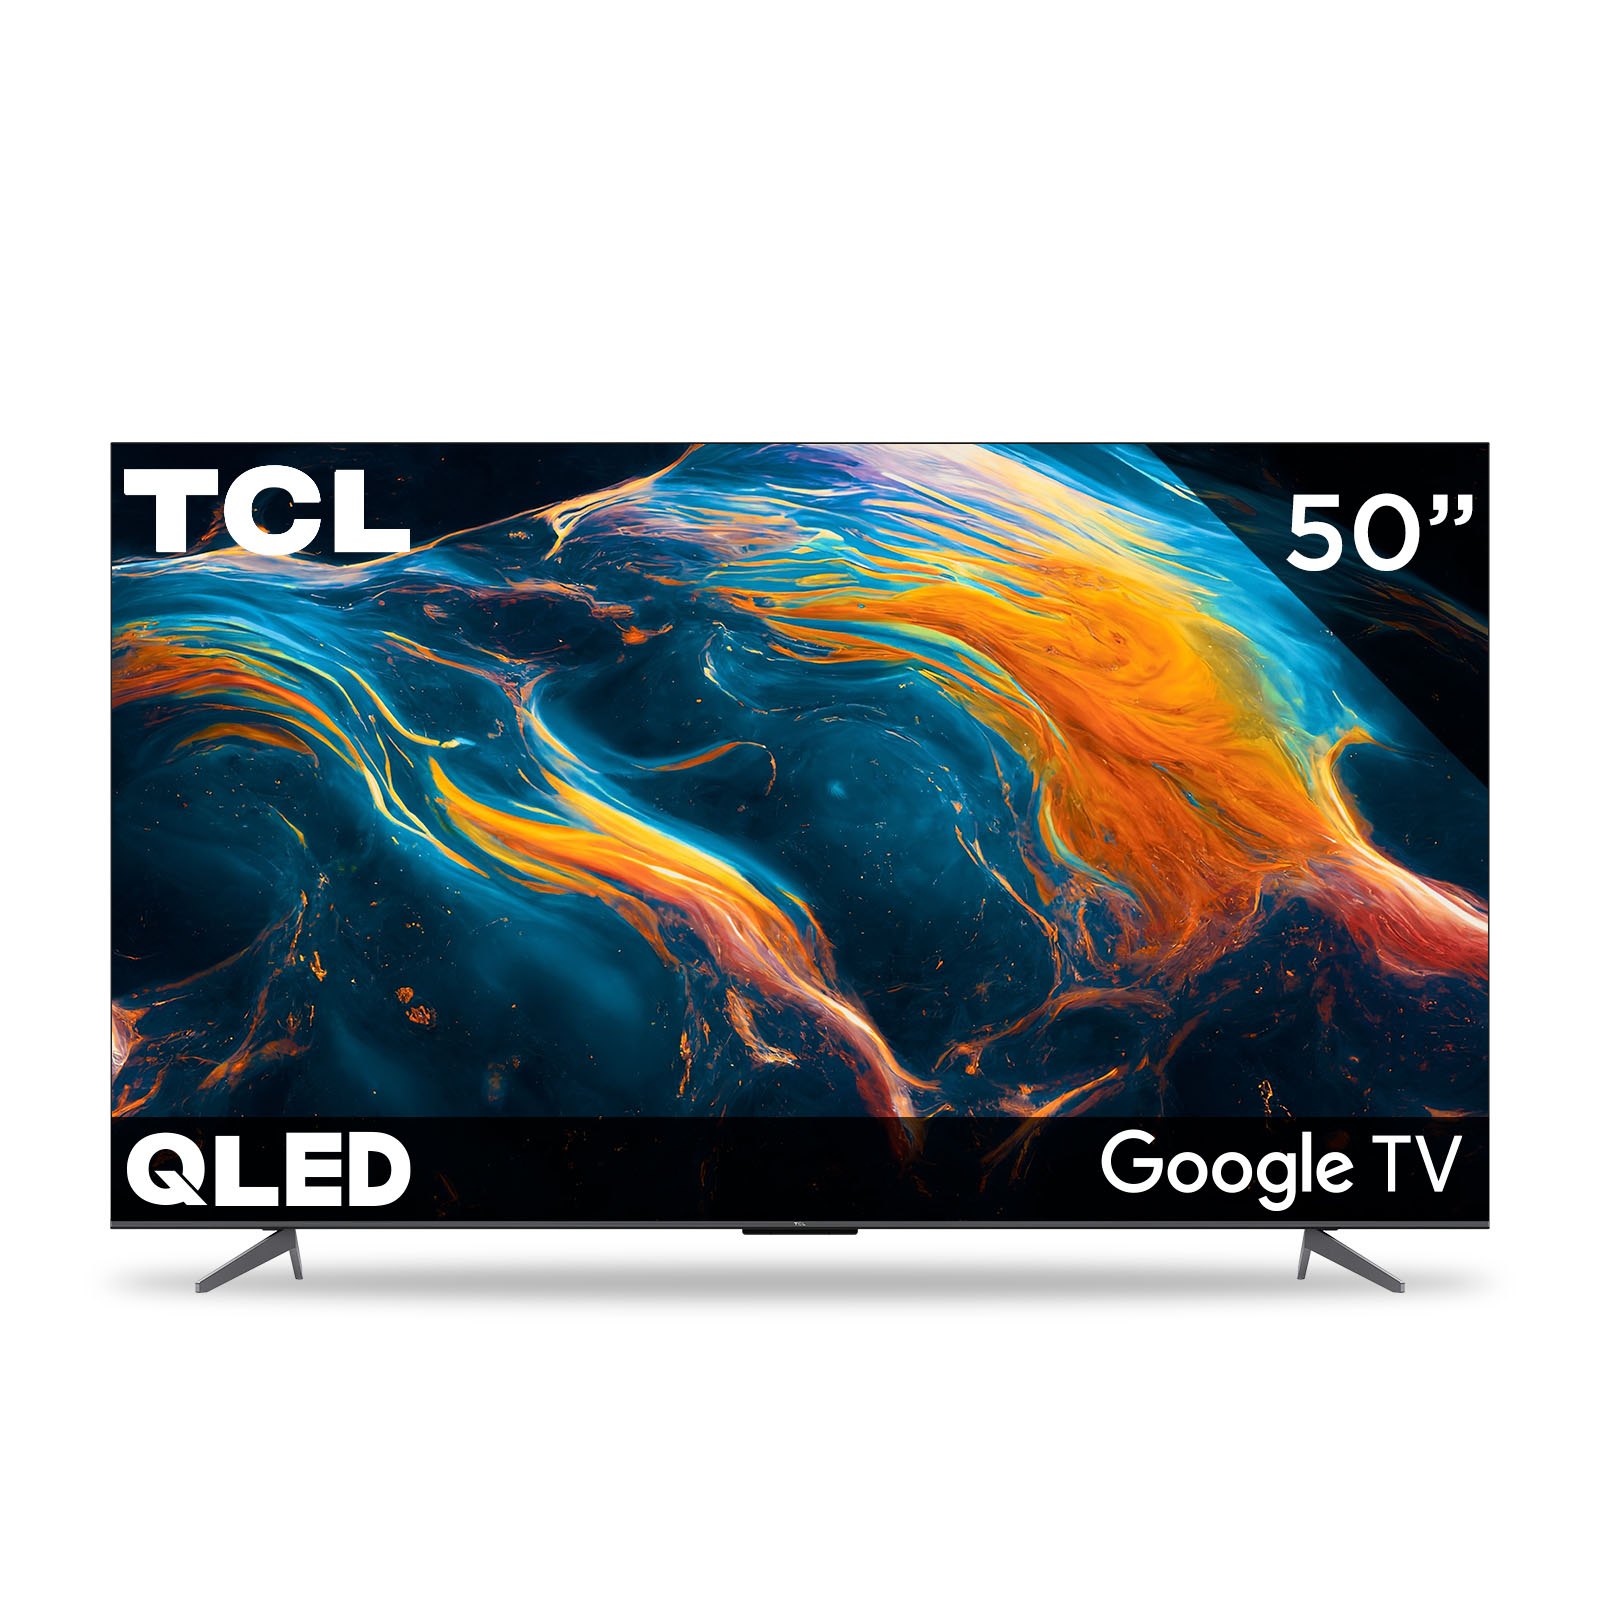 Pantalla TCL 50 QLED 4K HDR Google TV 50Q650G (Reacondicionado A, Empaque Dañado)